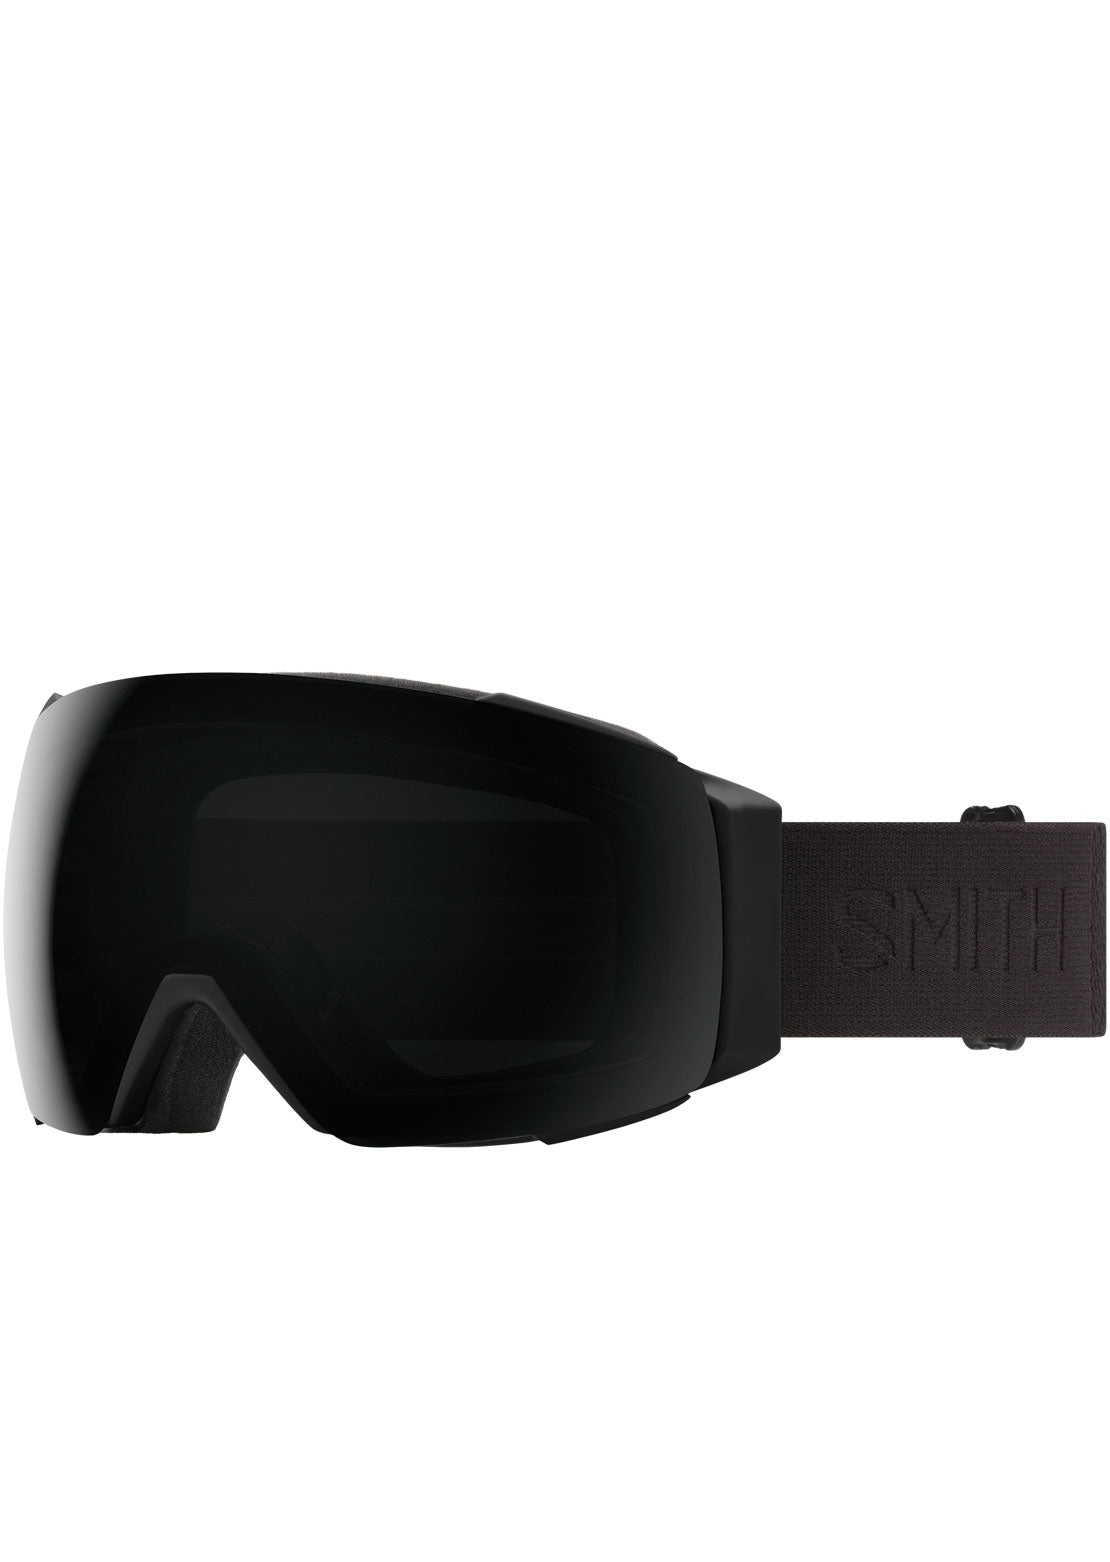 Smith I/O Mag Goggles Blackout/ChromaPop Sun Black